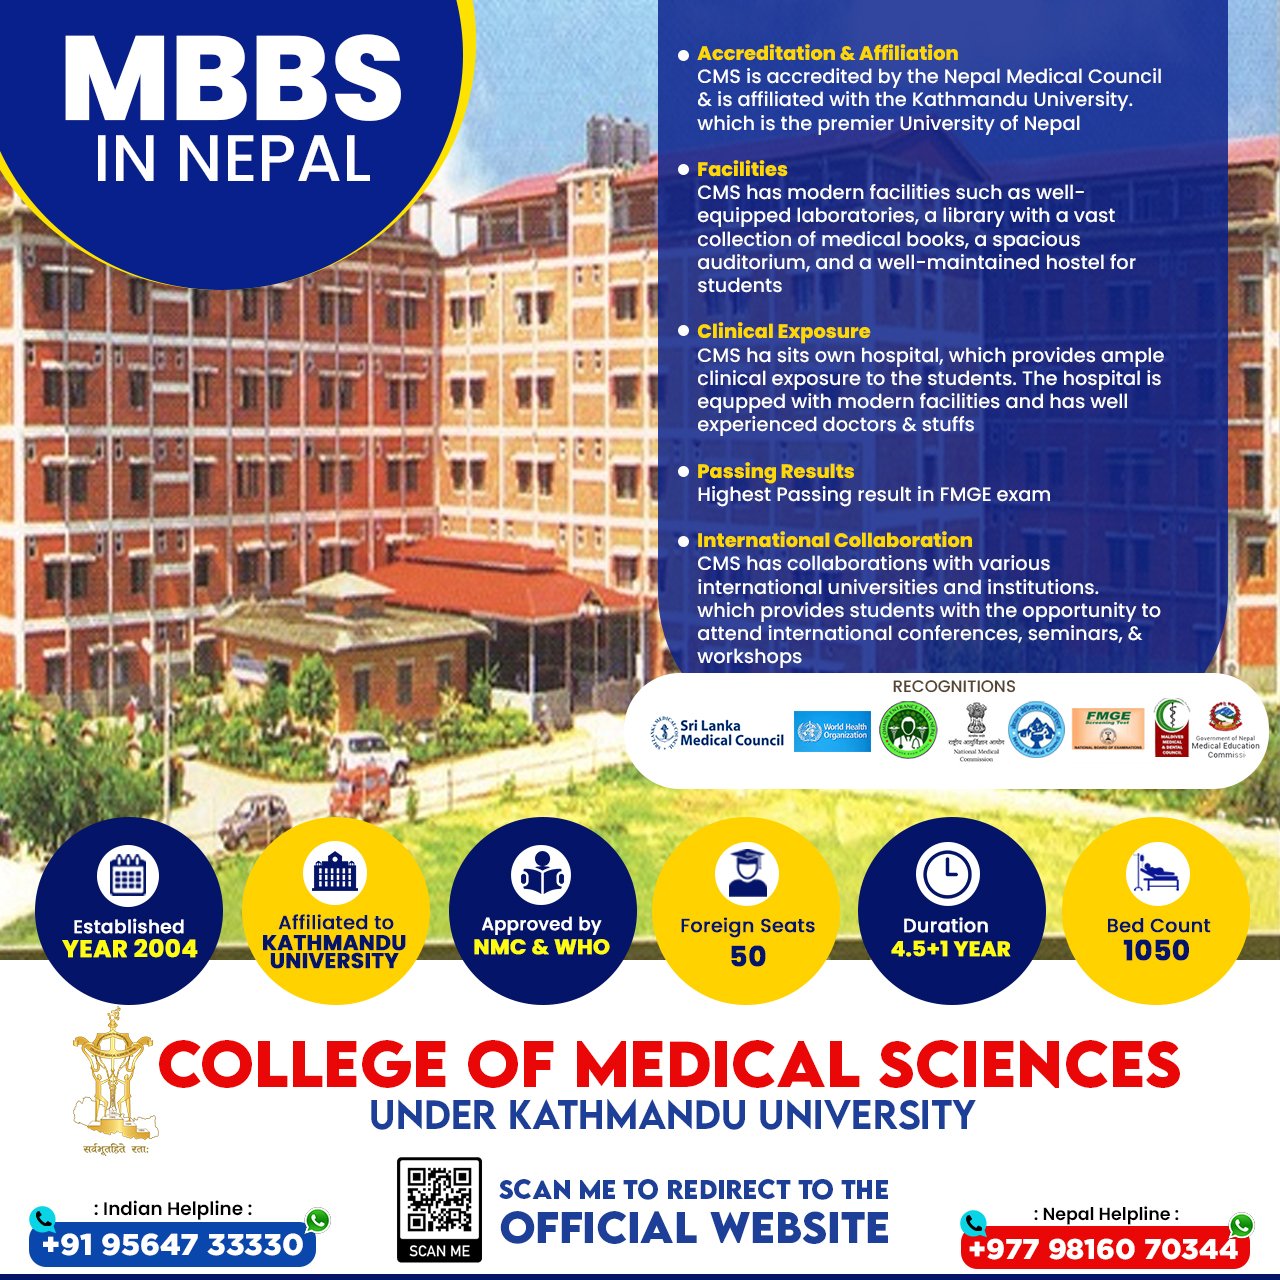 mbbs-in-nepal-at-college-of-medical-sciences-nepal-under-kathmandu-university